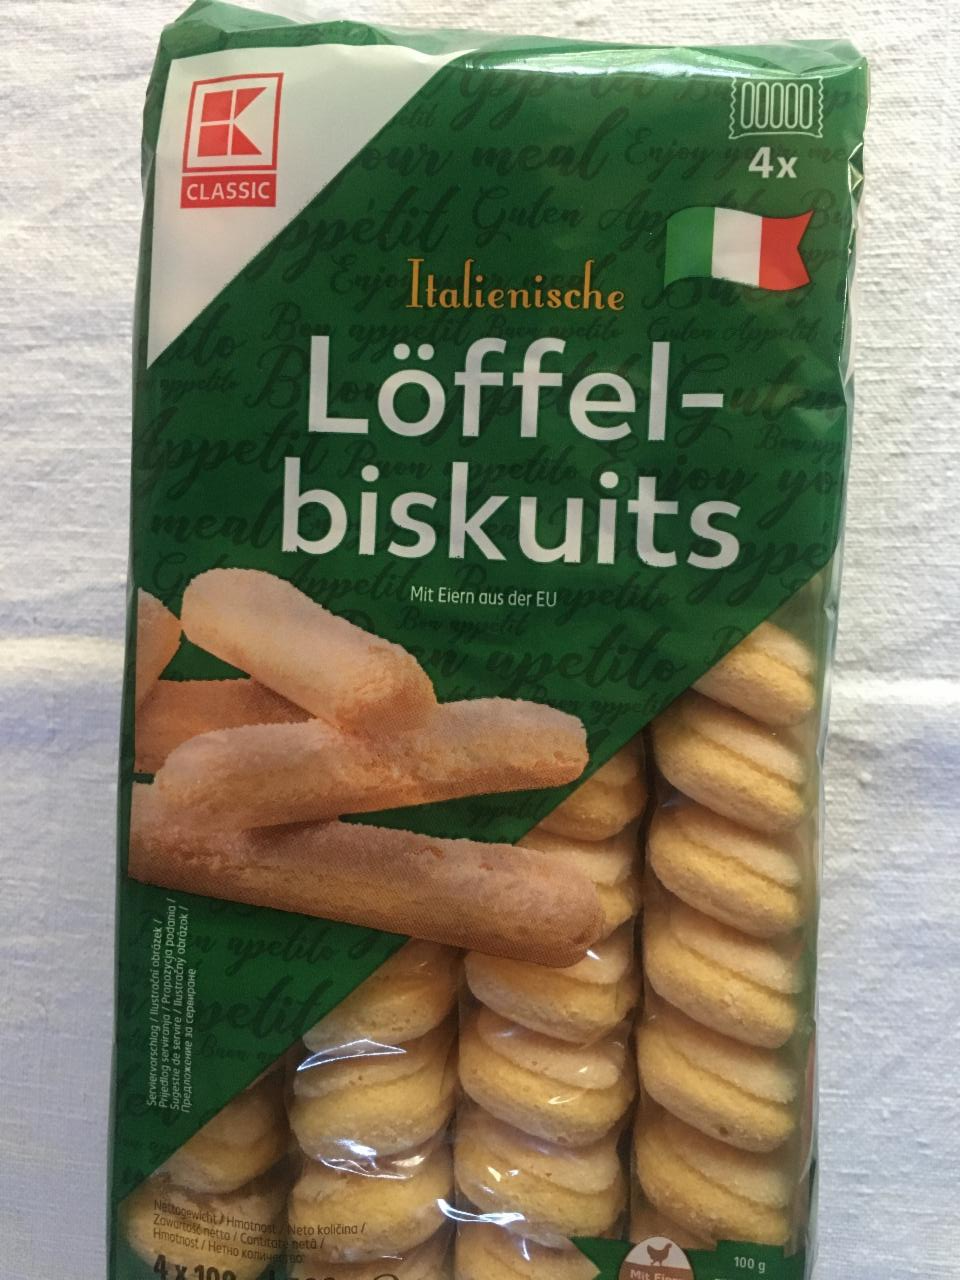 Fotografie - Löffel-biskuits Italienische